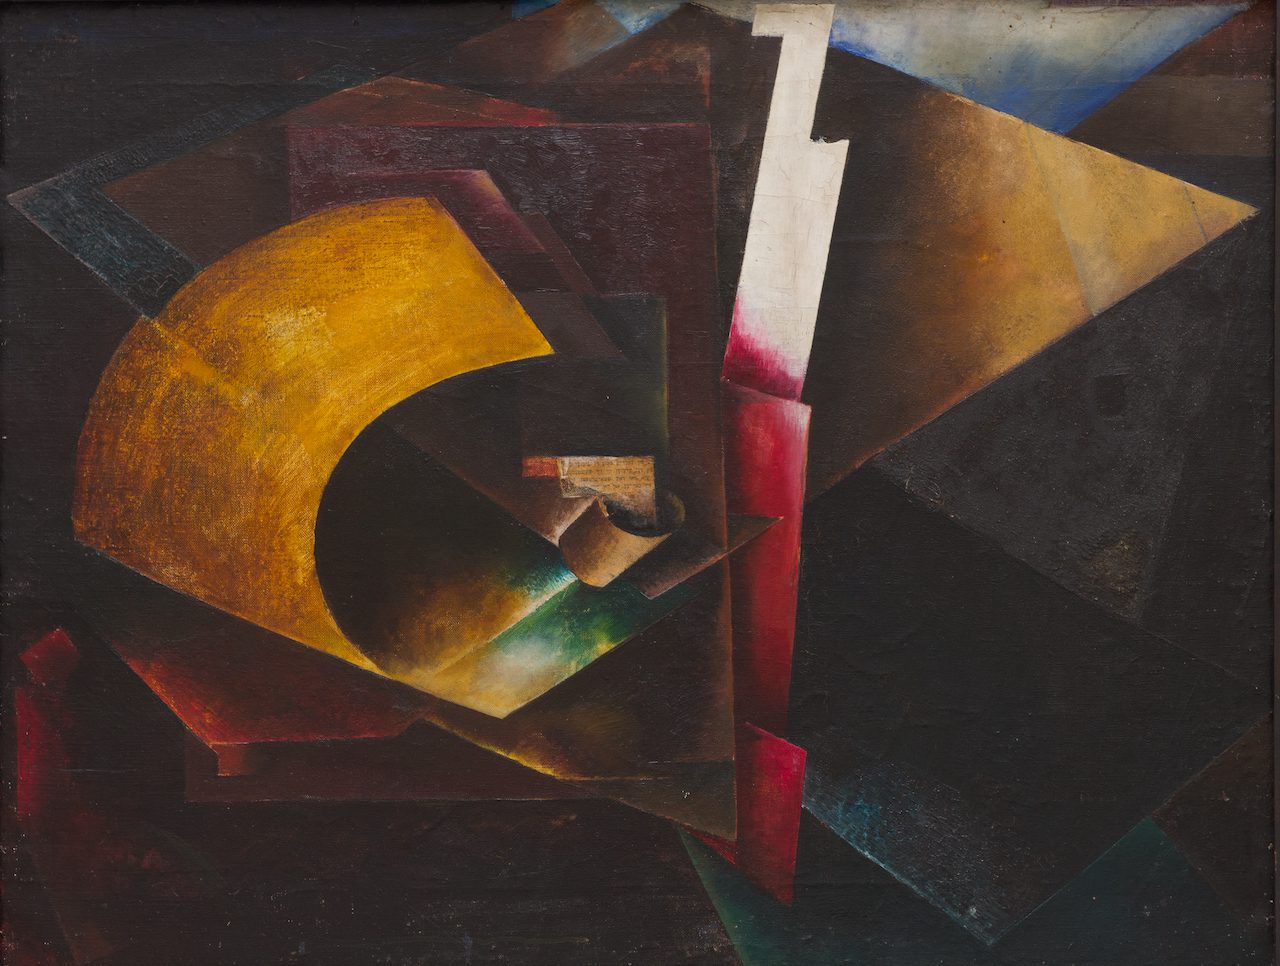 El Lissitzky - 'Composición' (1918 - década de 1920).